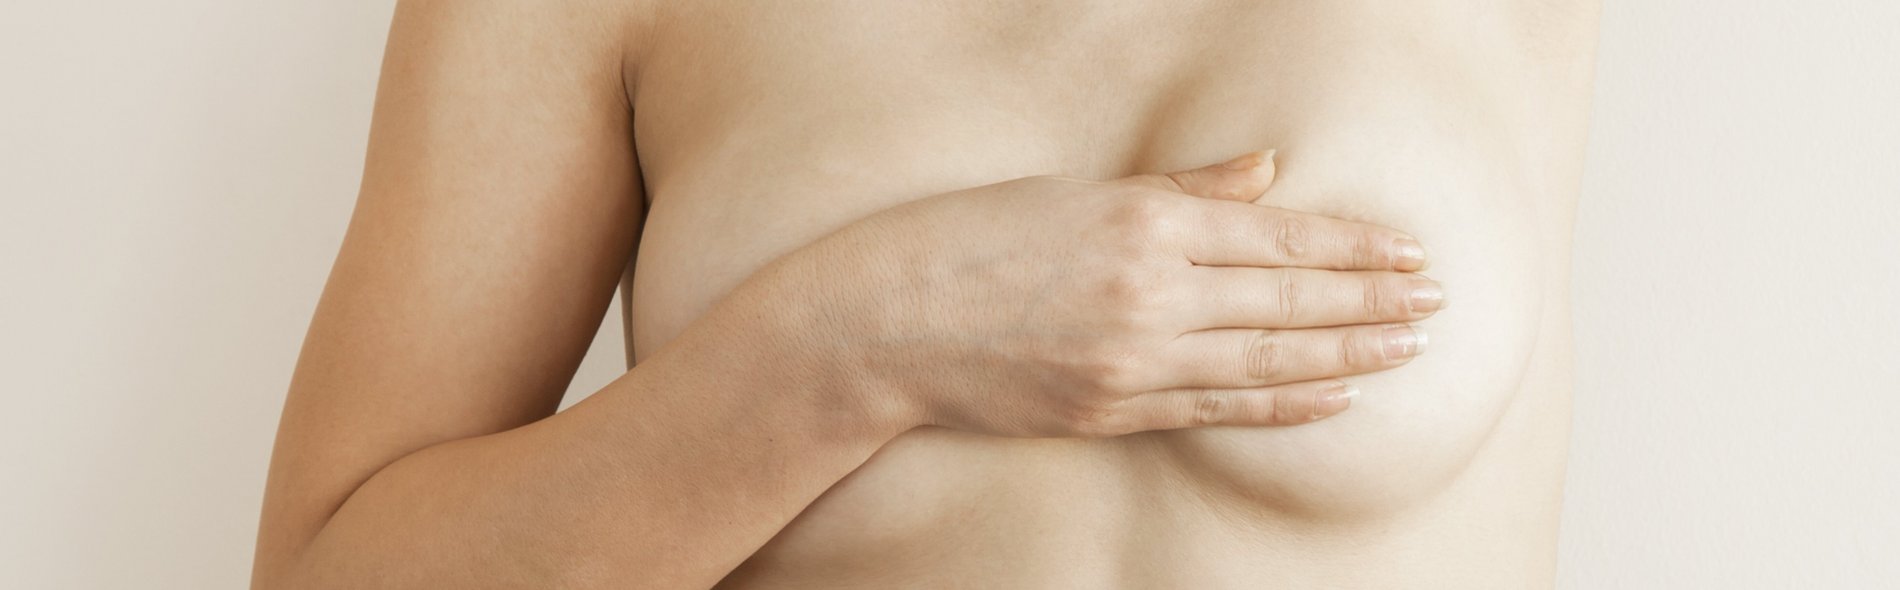 Detailbild des nackten Oberkörpers einer Frau, die ihre linke Brust nach veränderungen, Auffälligkeiten oder Knoten abtastet